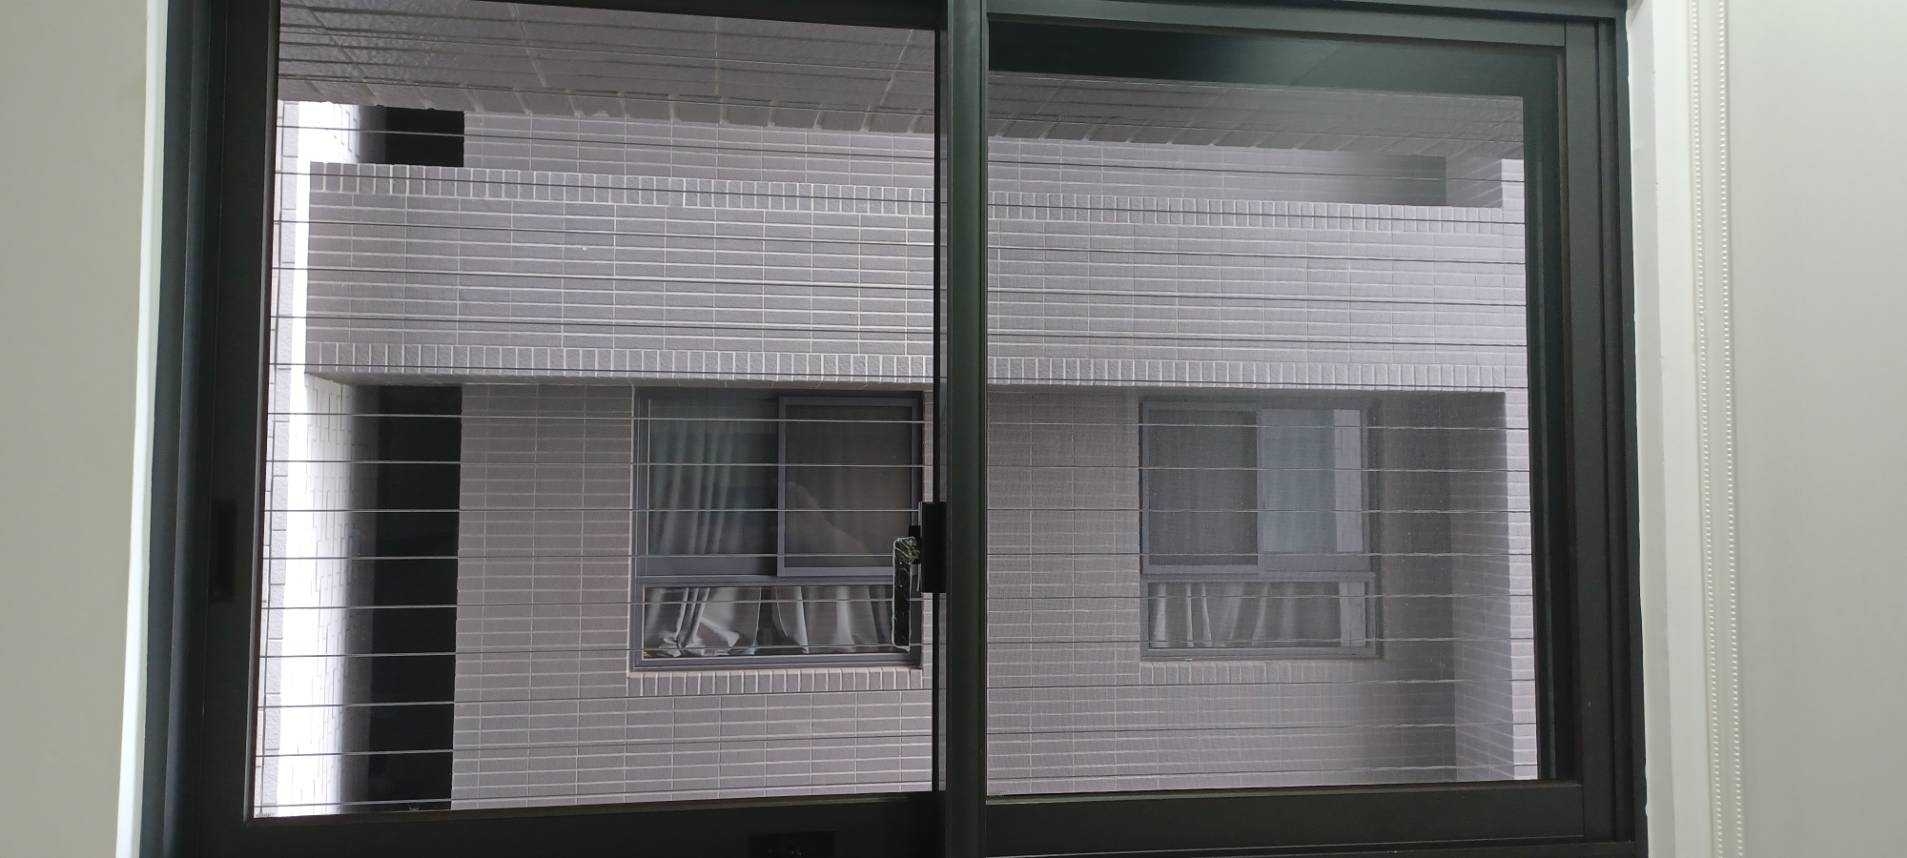 【台中隱形鐵窗】台中洲際棒球場附近 隱形鐵窗工程